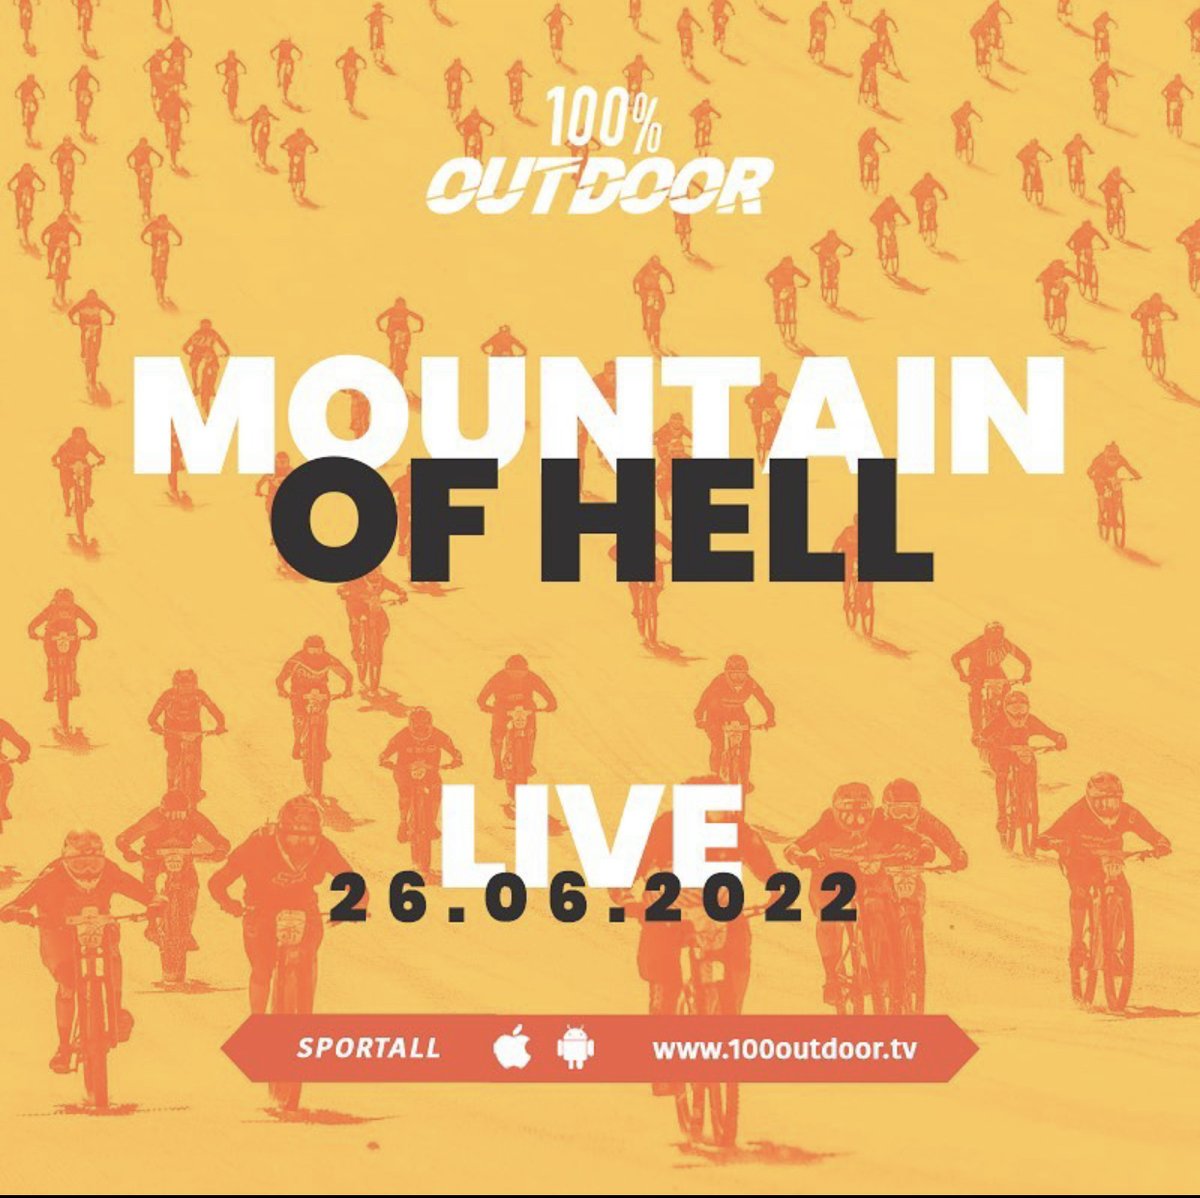 🔜 Ce dimanche, 2⃣ directs à venir sur 100% Outdoor ! 👇

⏱ 7h 👉  Marathon du Mont Blanc 👟
⏱ 8h30 👉 Mountain of Hell 🚲

📺 RDV sur 100outdoor.tv ! 

@100outdoortv  #Marathon #VTT #run #running #trail #outdoor #marathon #montblanc #marathonmontblanc2022